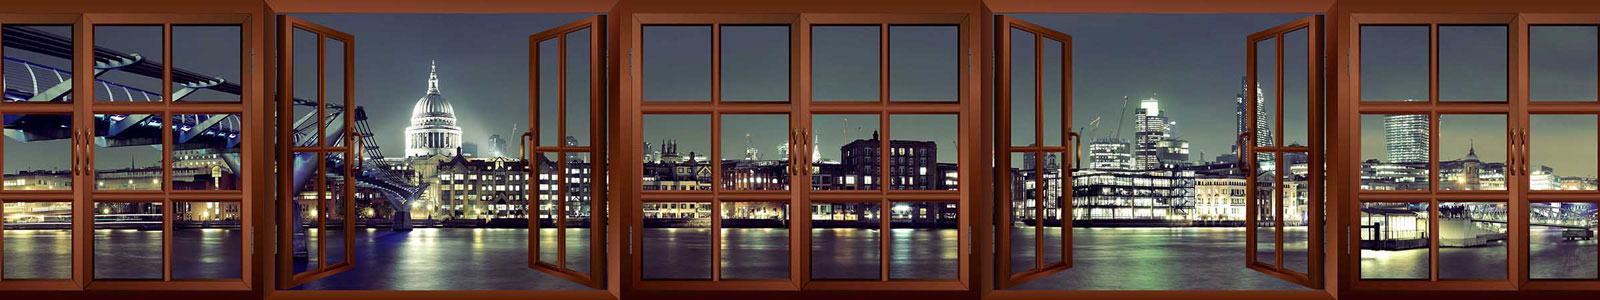 №3795 - Вид из окна на Мост Тысячелетия и Собор Св. Петра в Лондоне